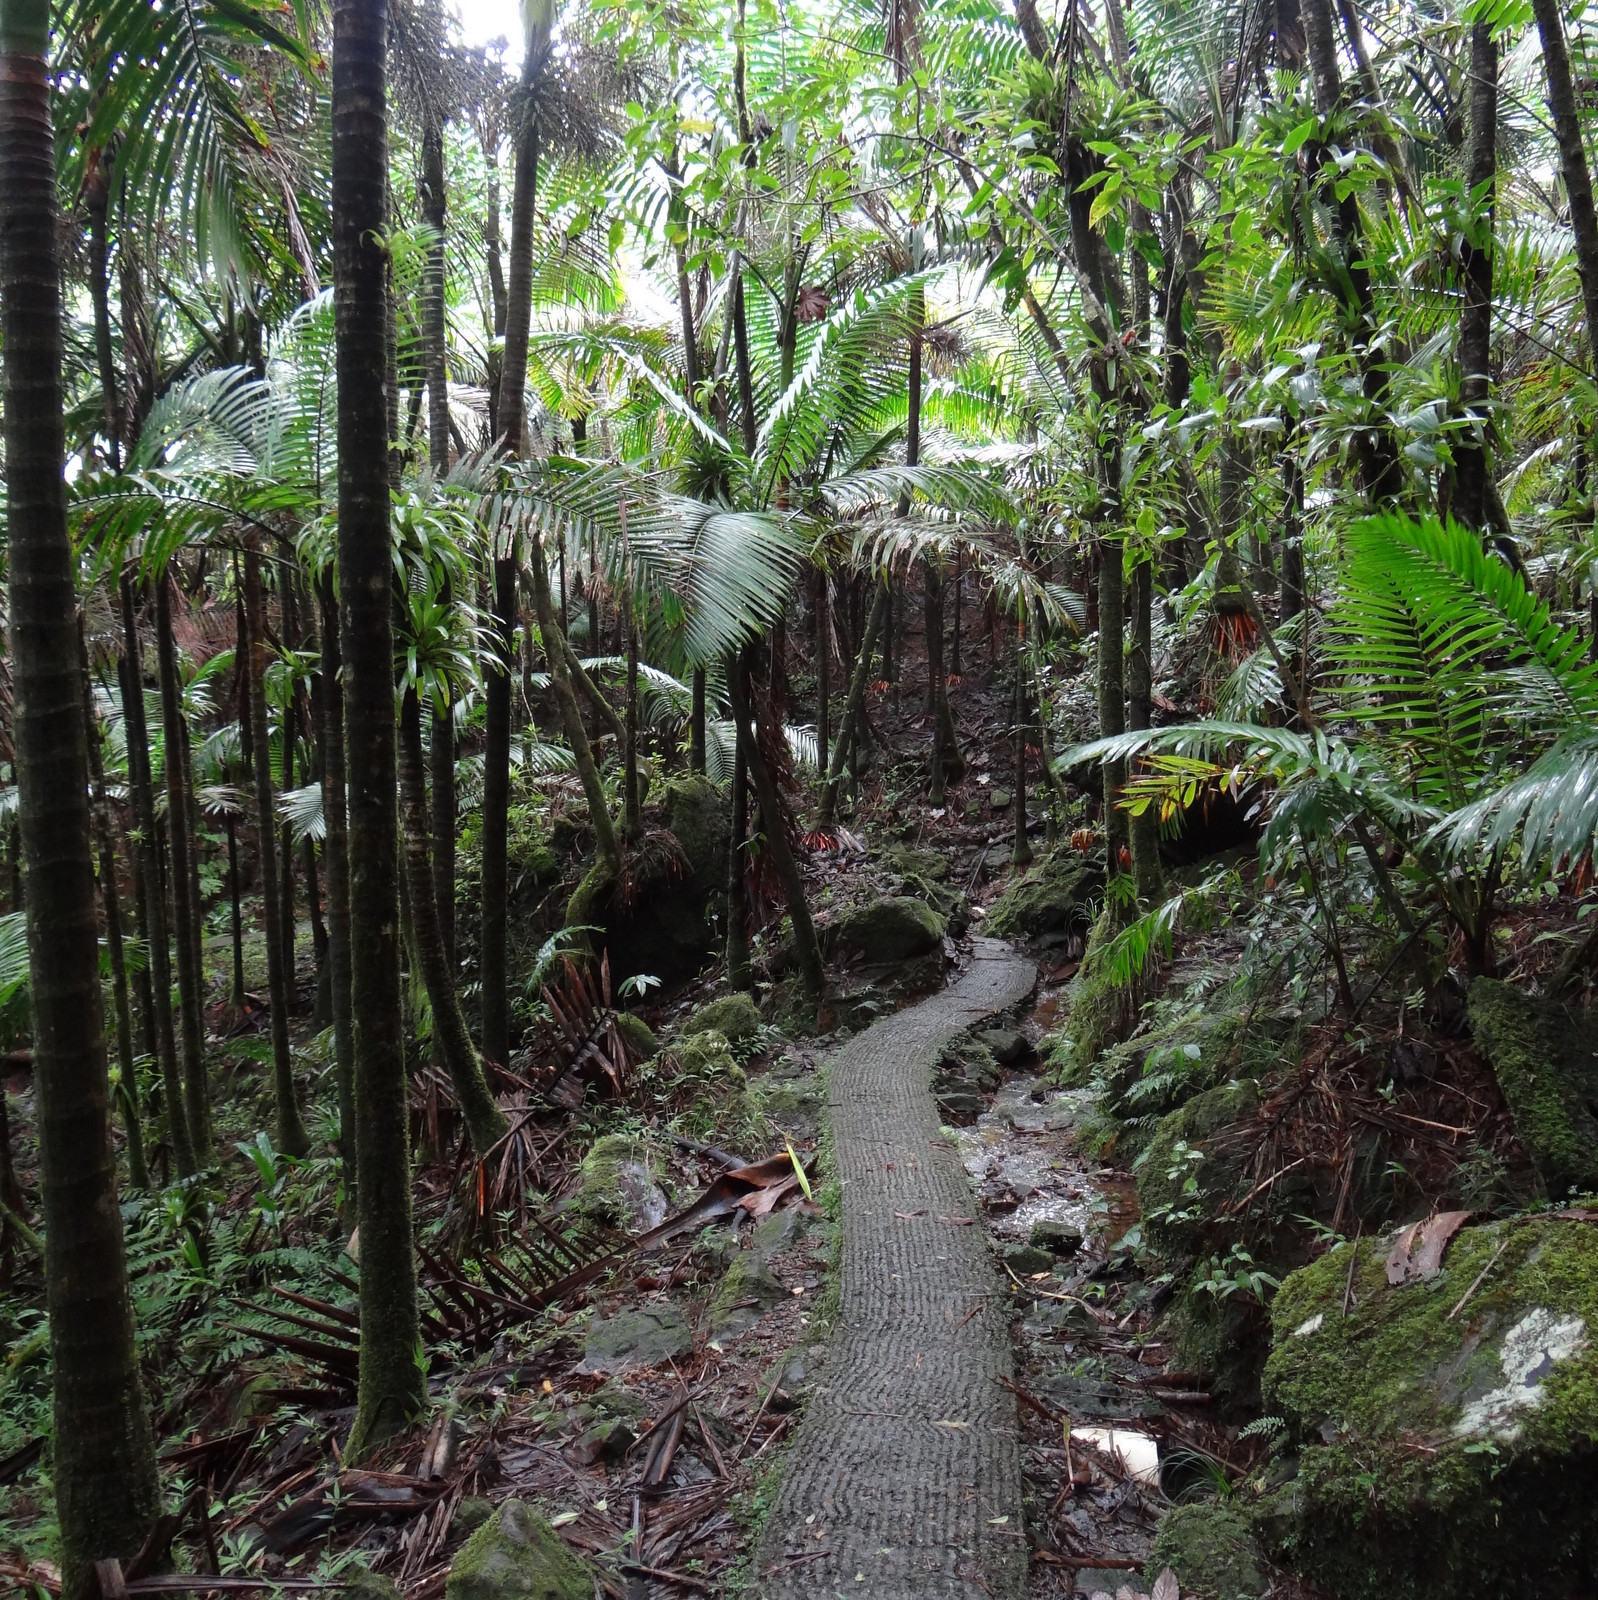 a winding path through a rain forest